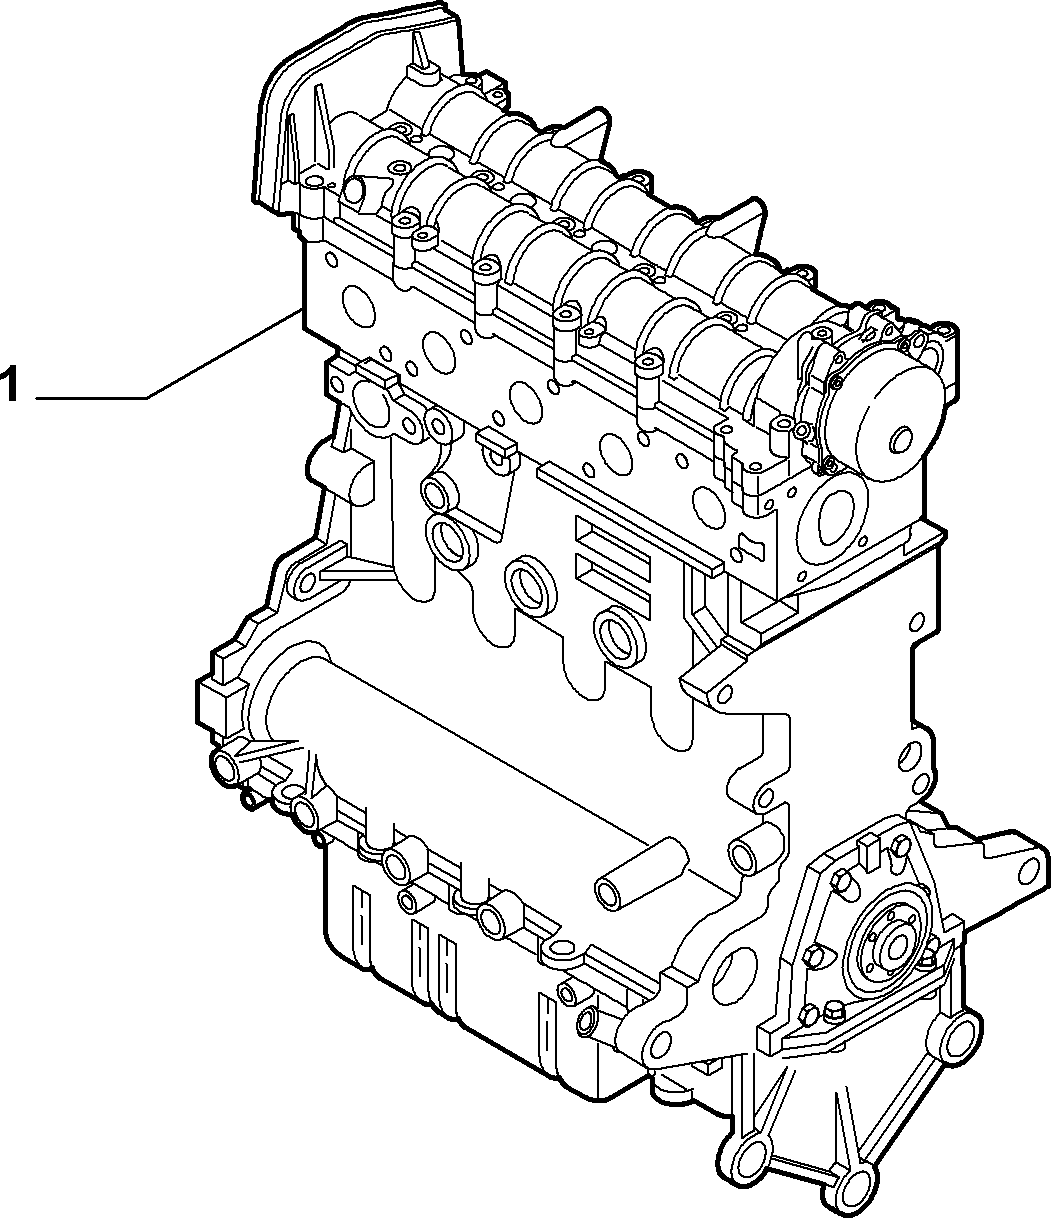 ENGINE for Alfa Romeo 159 ALFA 159 (2008 - 2010)